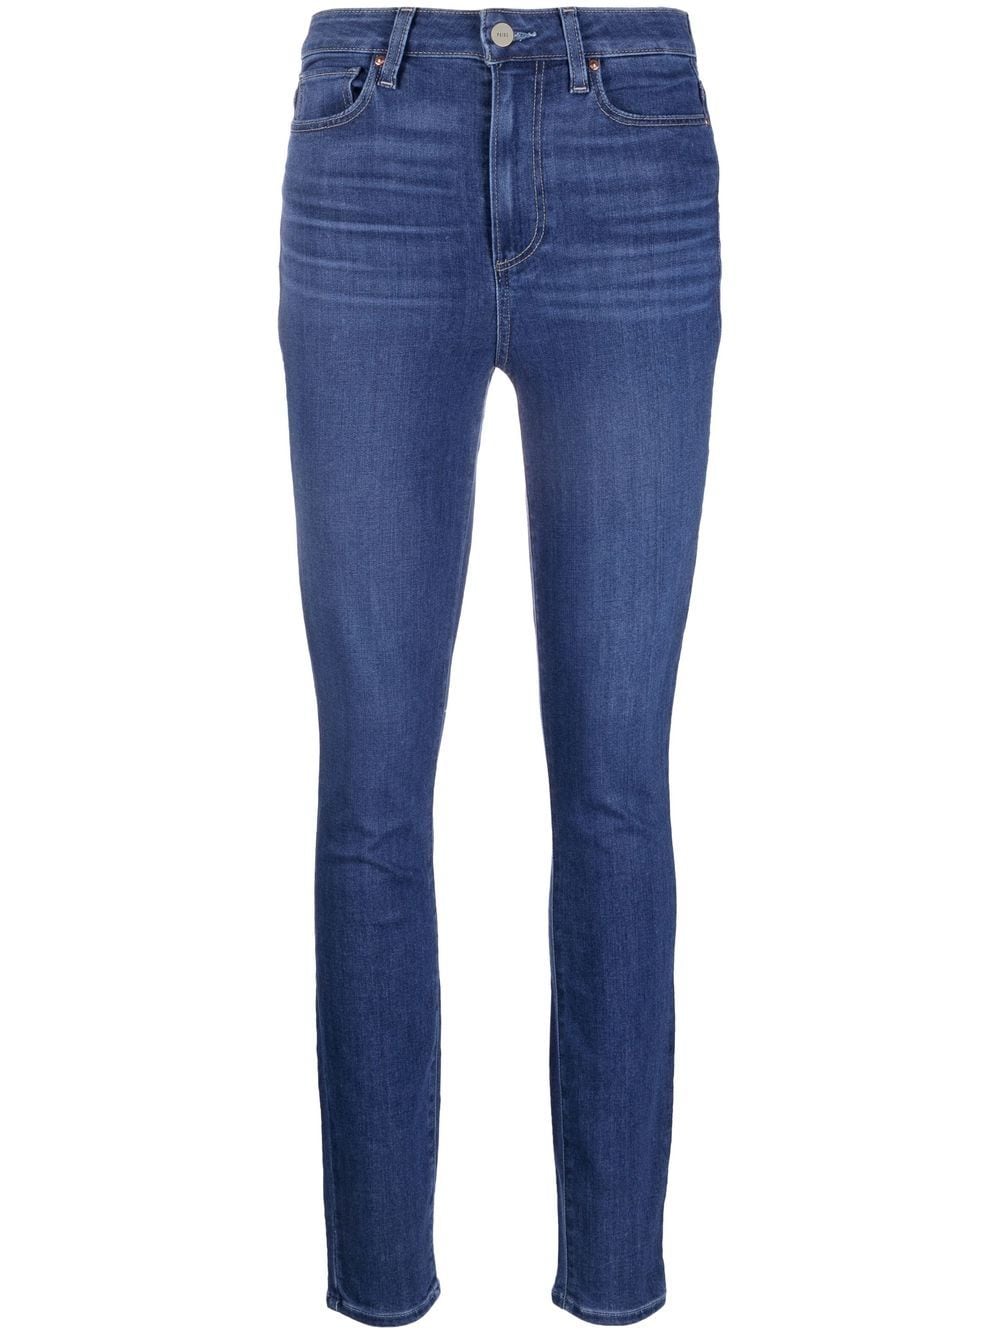 PAIGE high-waisted skinny jeans